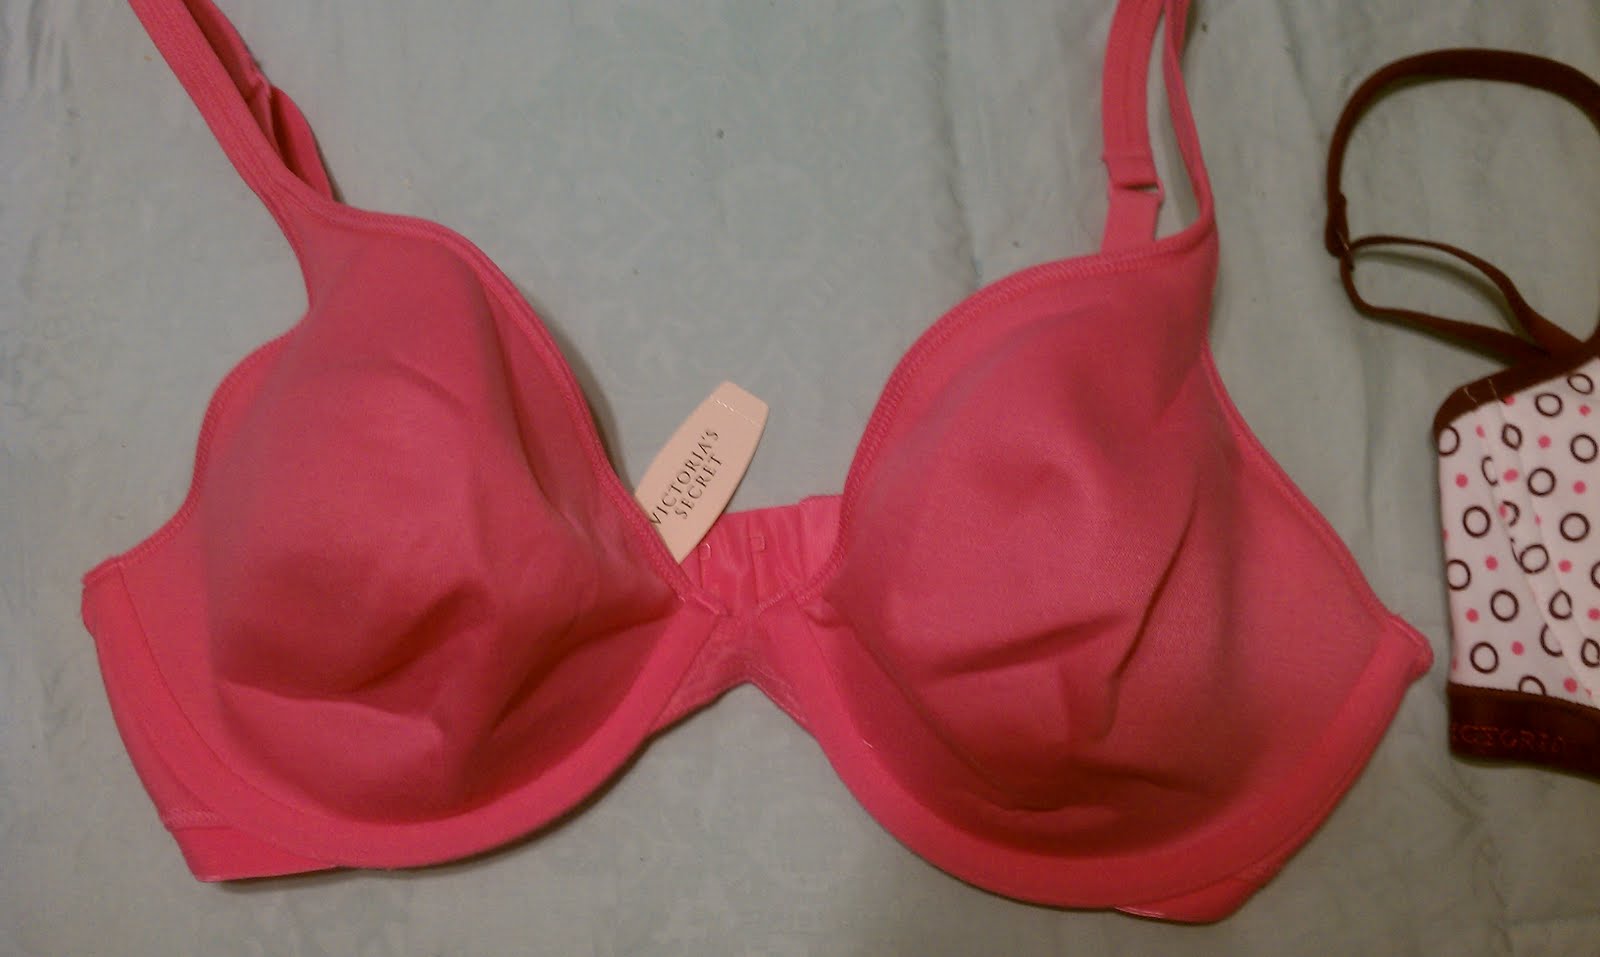 Items for sale: Victoria's Secret Pink bras 36 D